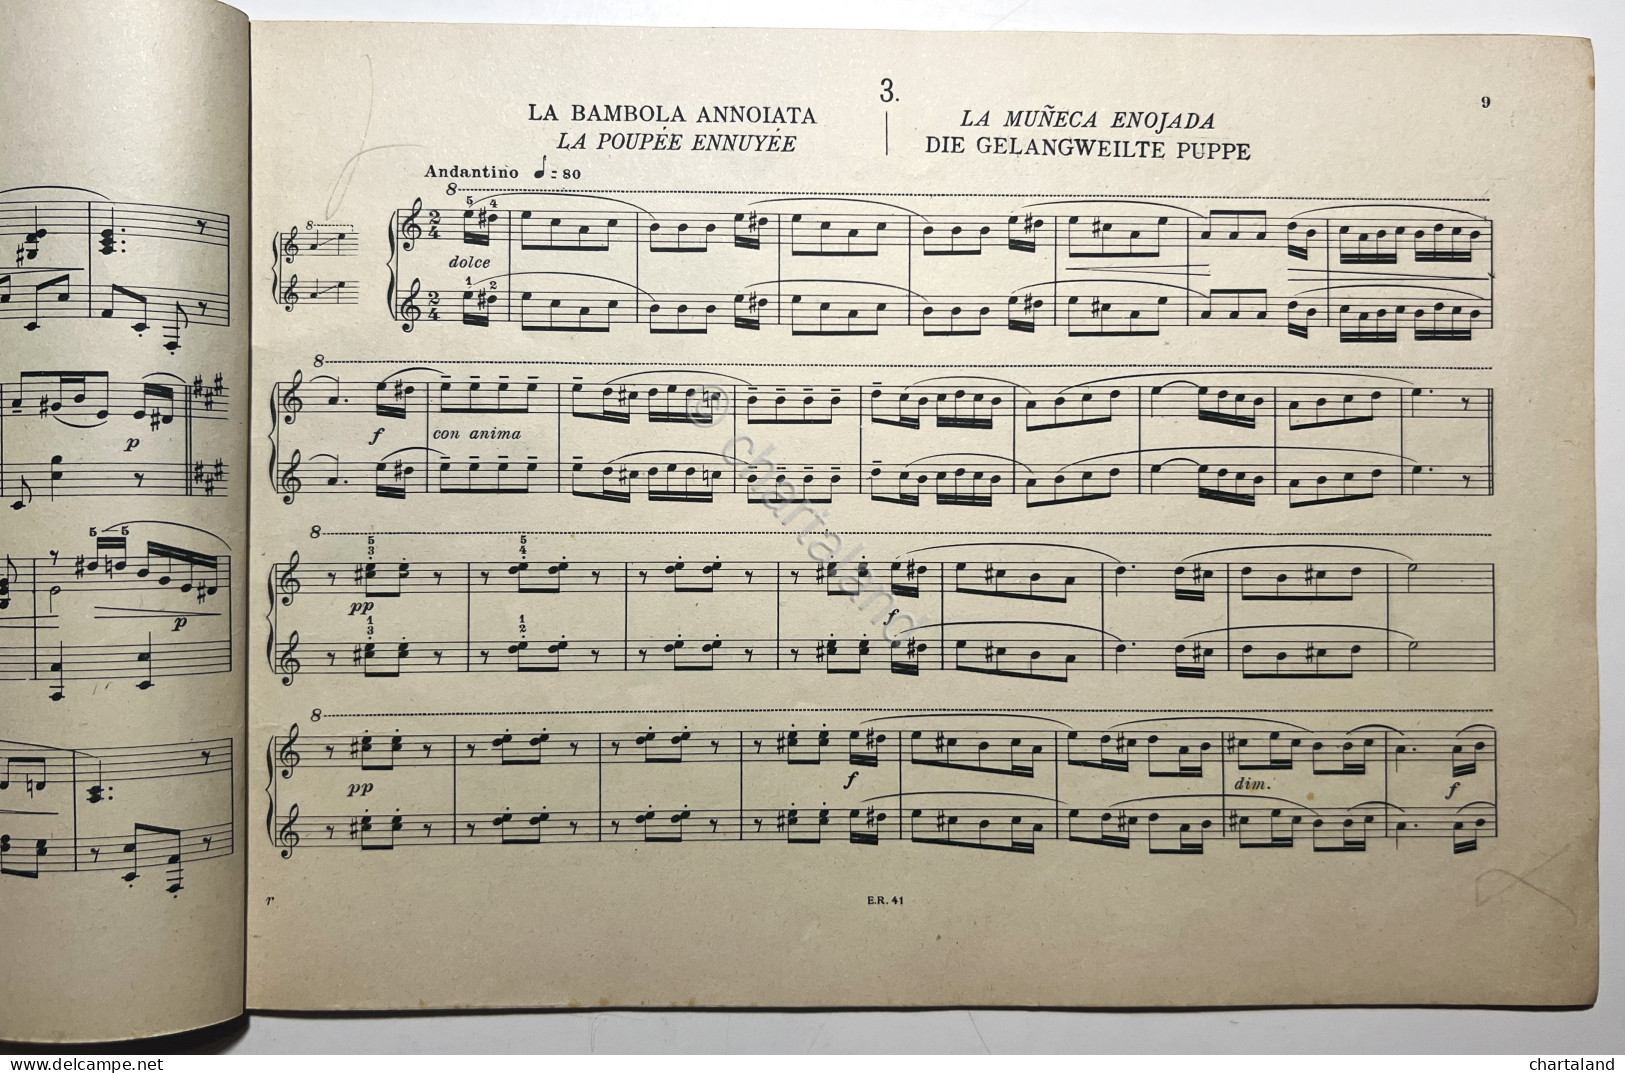 Spartiti - G. Galluzzi - Ricreazioni Pianistiche Per Piano A 4 Mani - Ed. 1944 - Unclassified